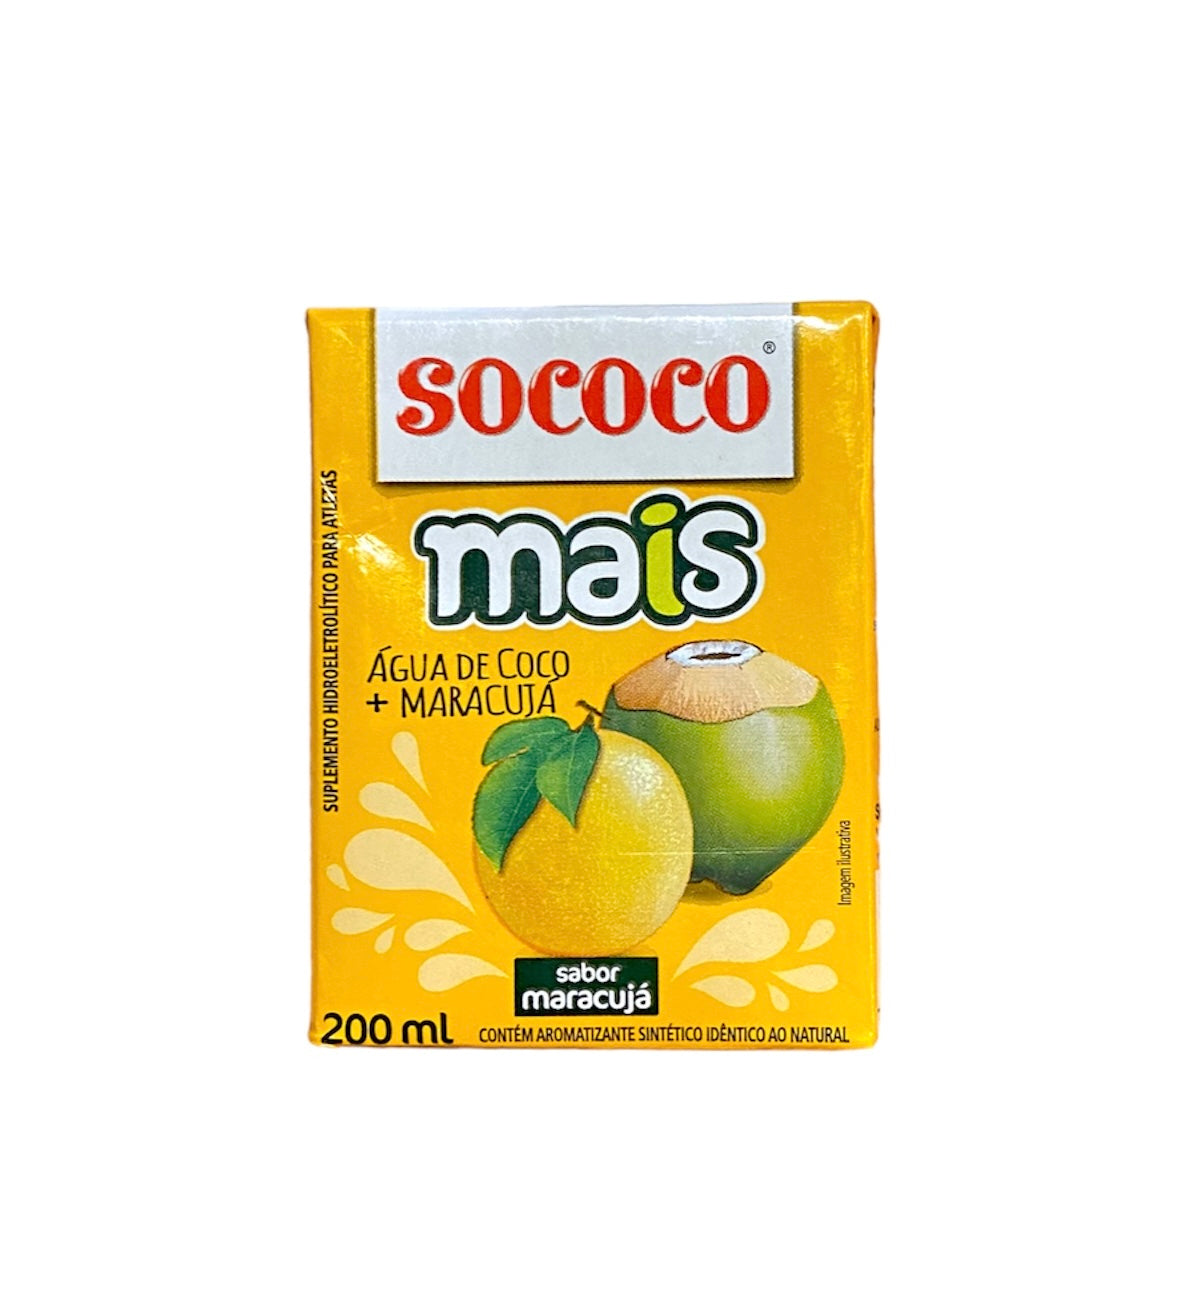 Sococo Coconut water + Passion fruit | Agua de coco + Maracuja